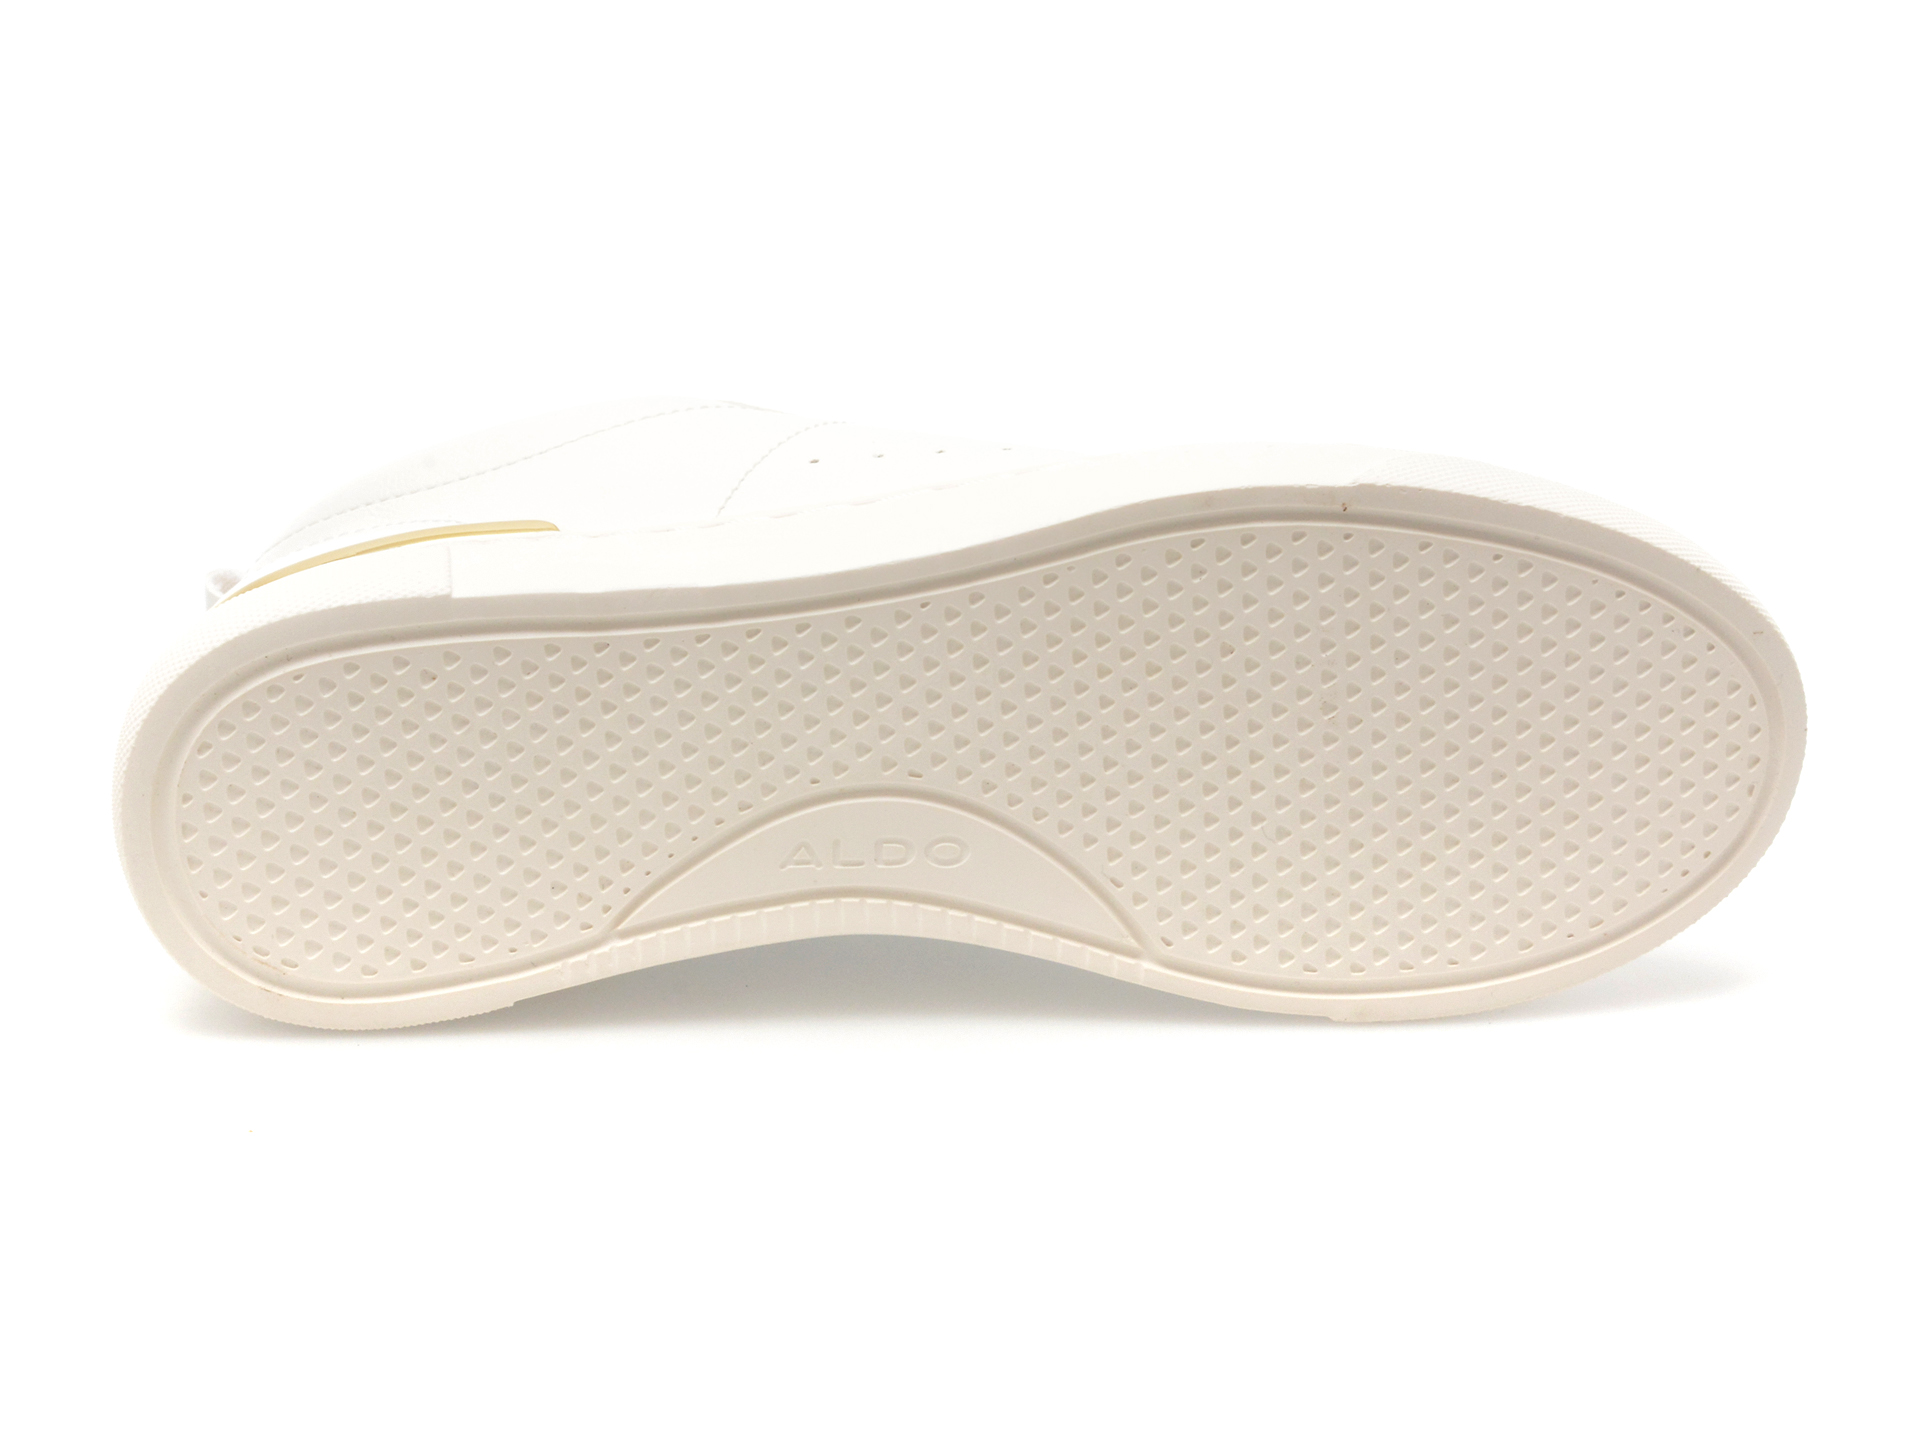 Pantofi ALDO albi, DILATHIELLE100, din piele ecologica